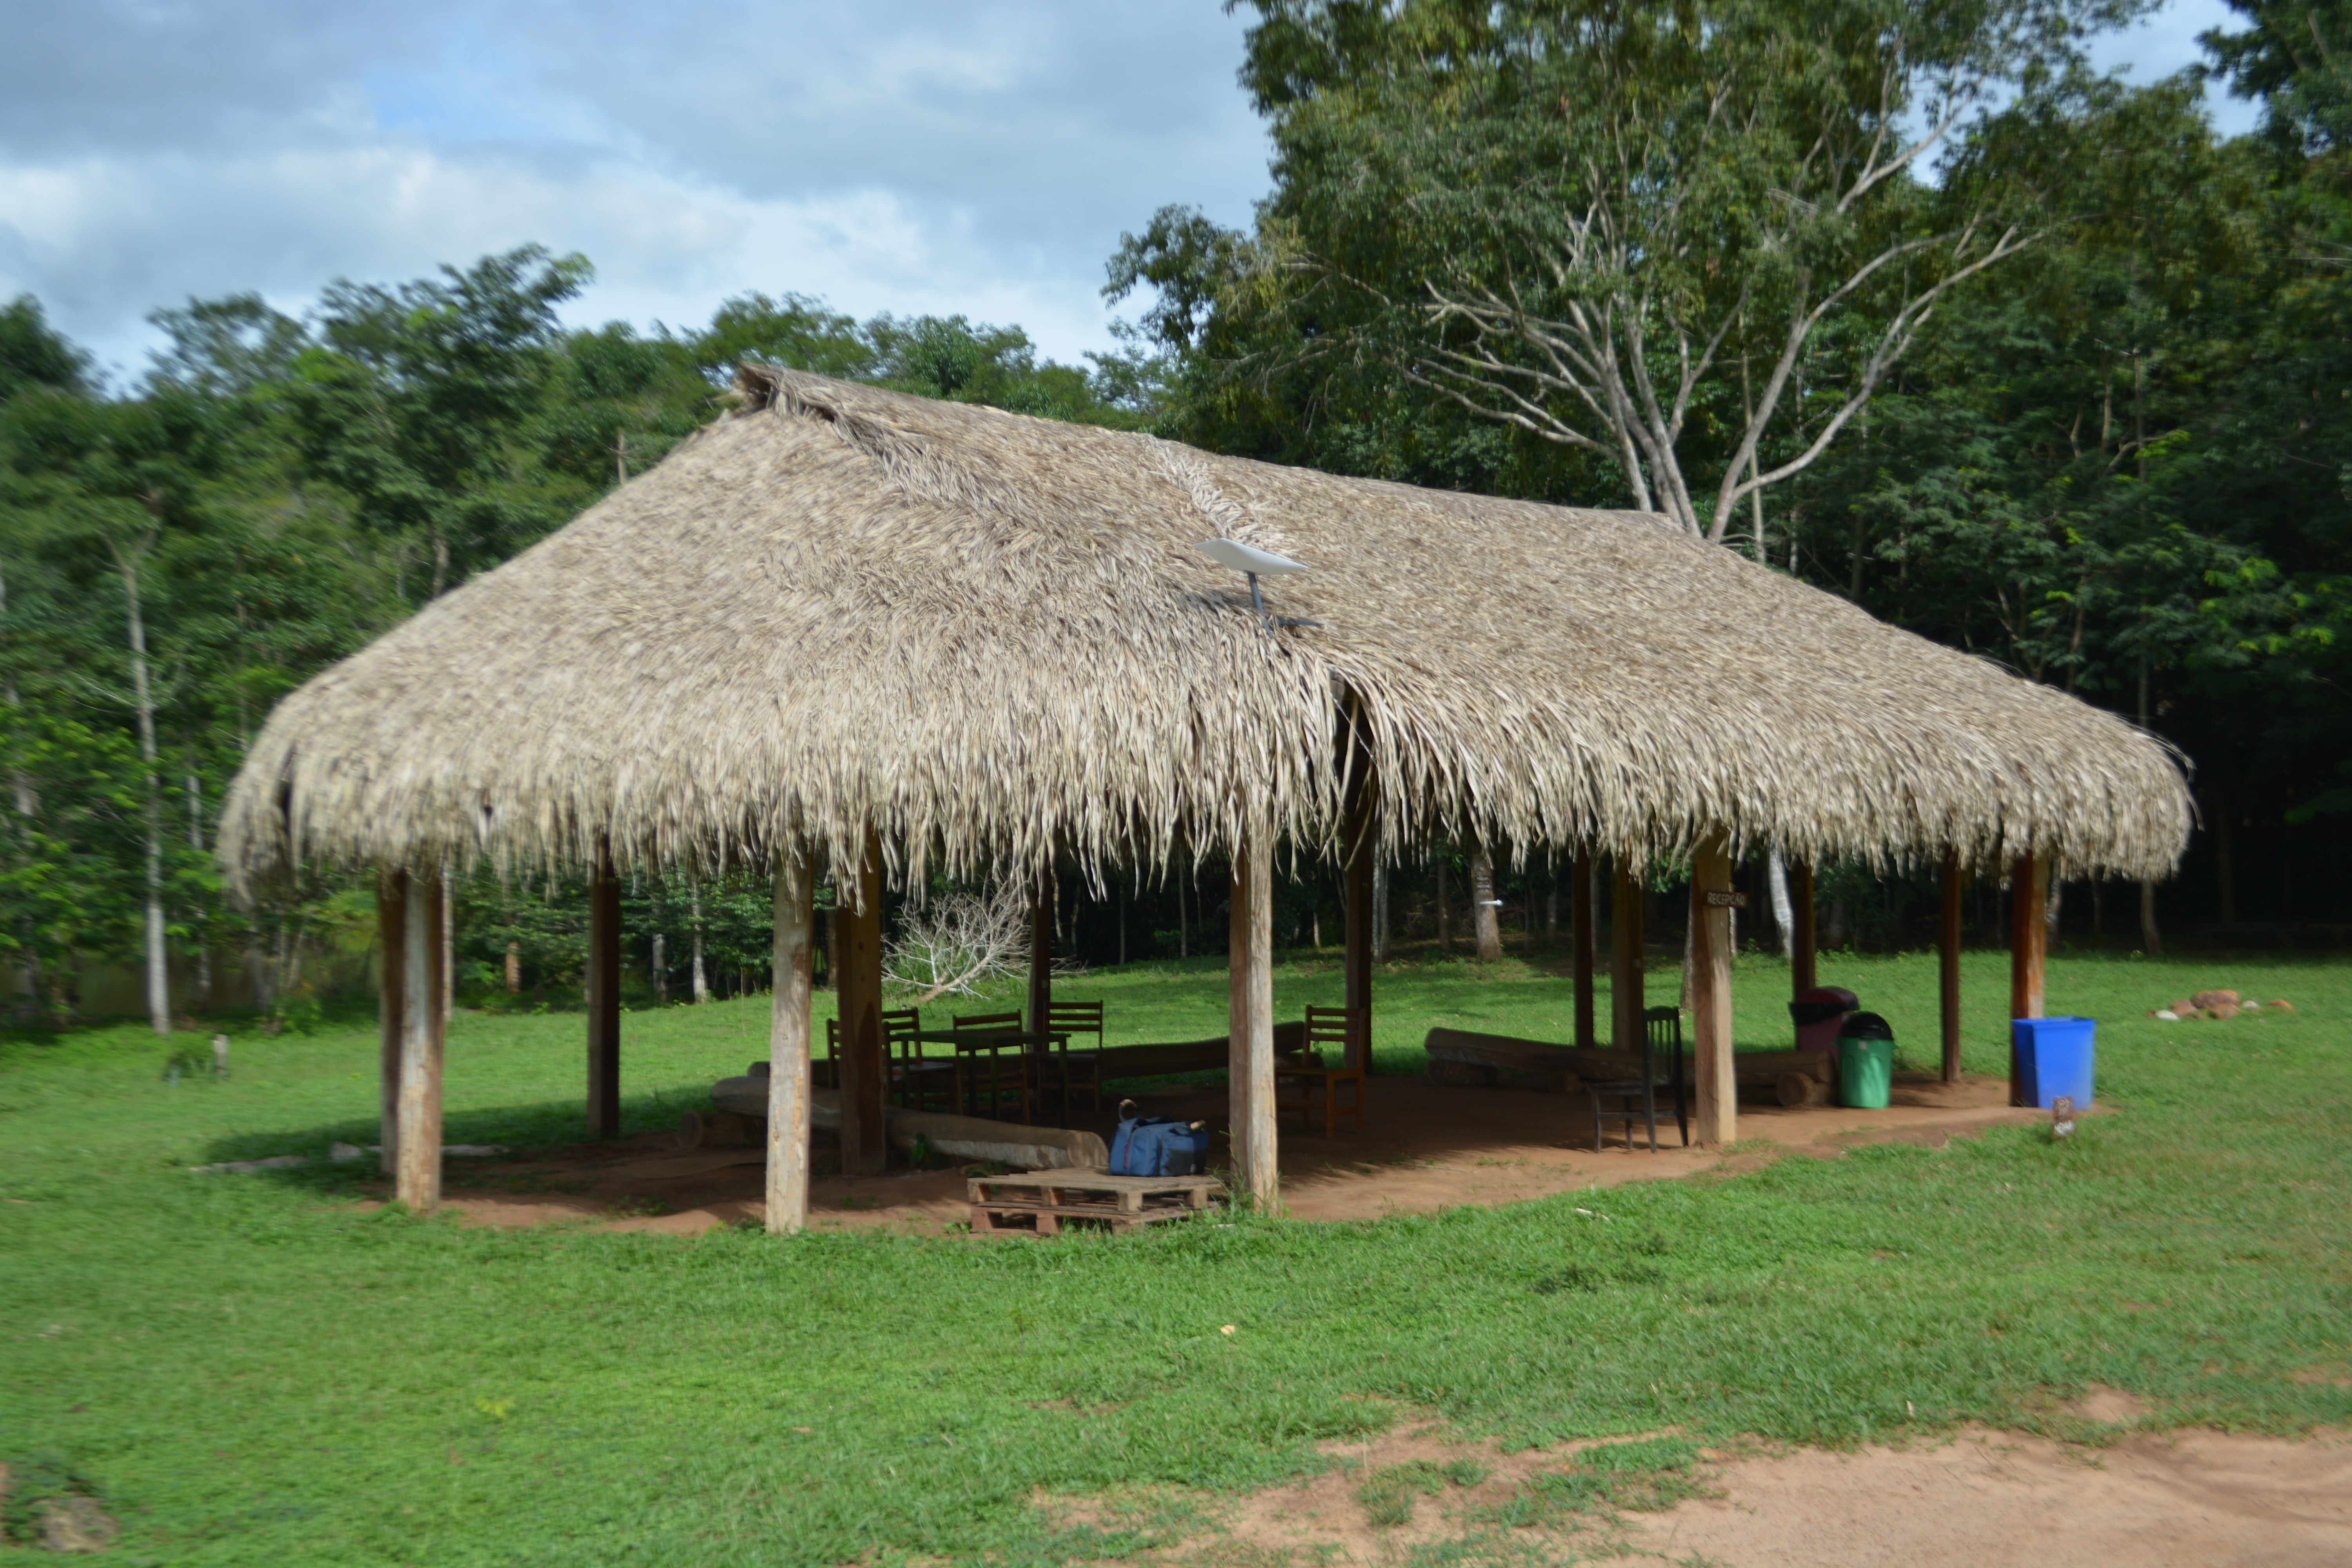 Recepção do espaço turístico do povo Paiter Suruí